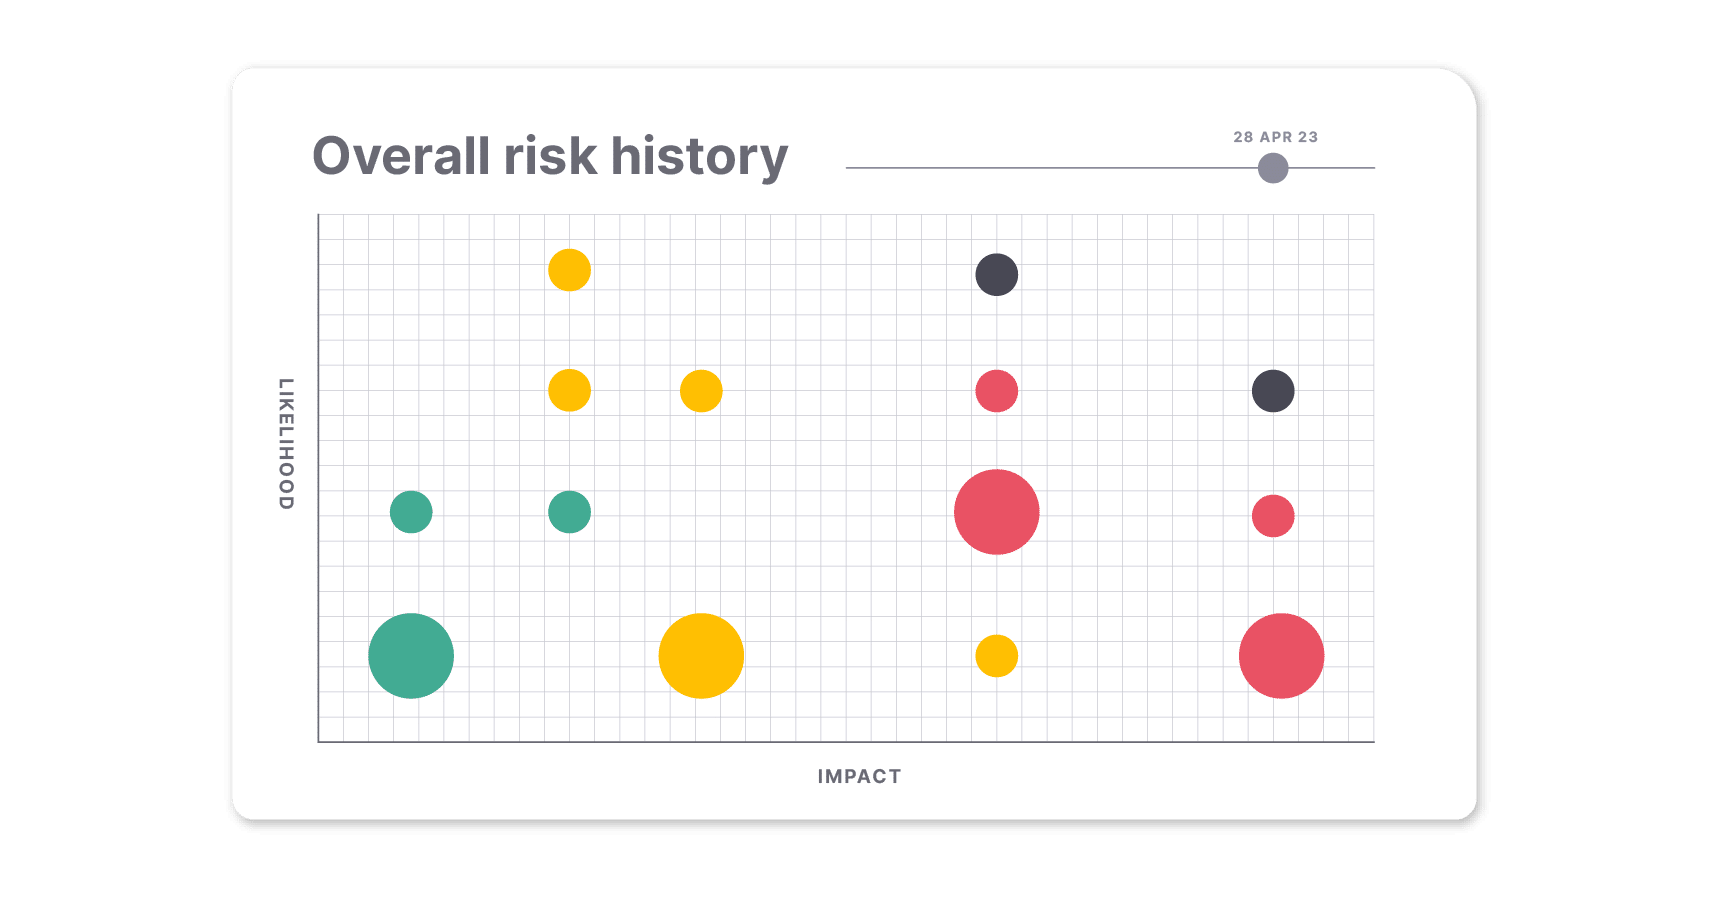 Verfolgen Sie mit dem Gesamtrisikoverlaufsdiagramm, wie sich Ihre Risiken im Laufe der Zeit entwickelt haben